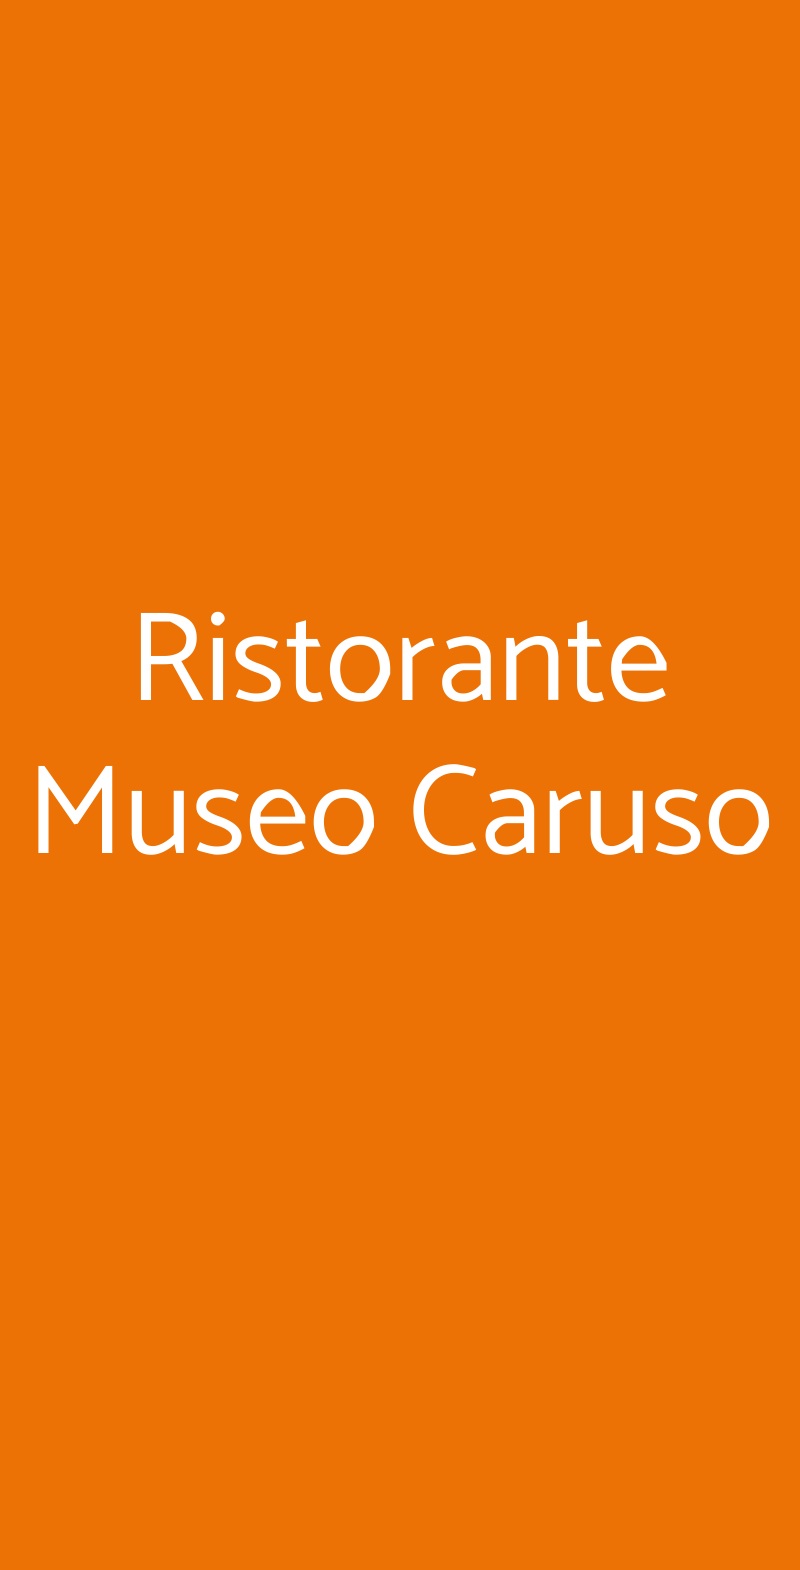 Ristorante Museo Caruso Sorrento menù 1 pagina